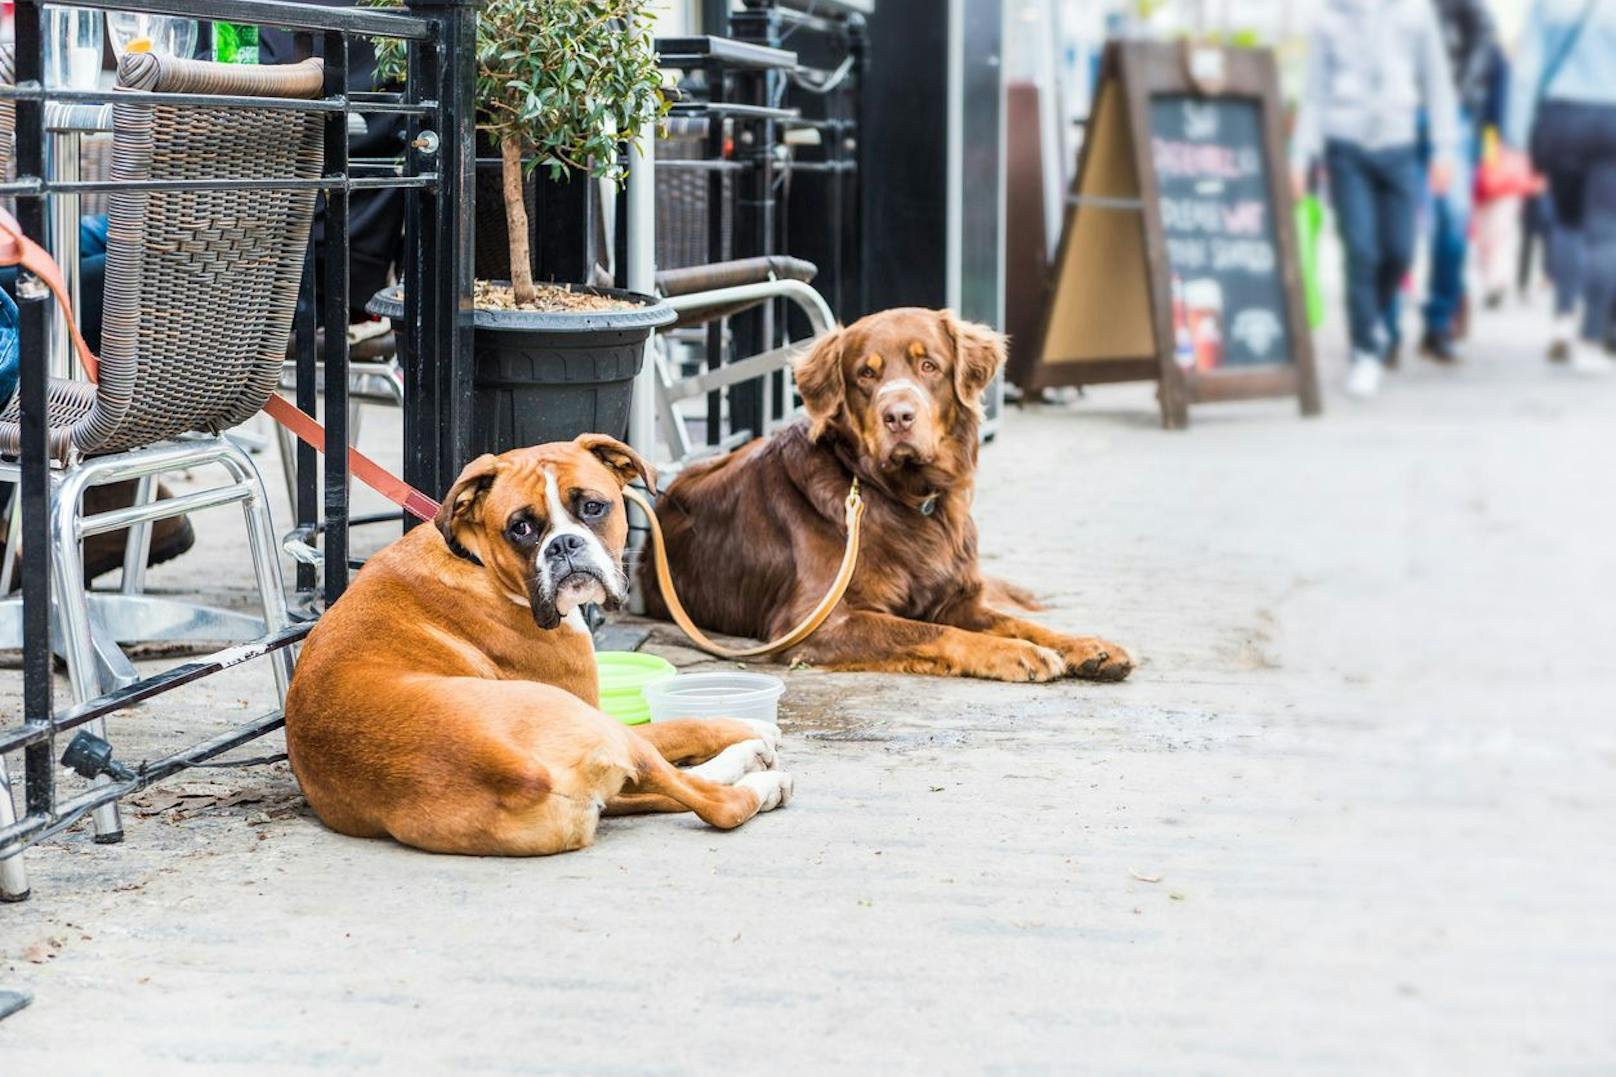 "Karma wird euch finden" – Lokal gab Hunden kein Wasser